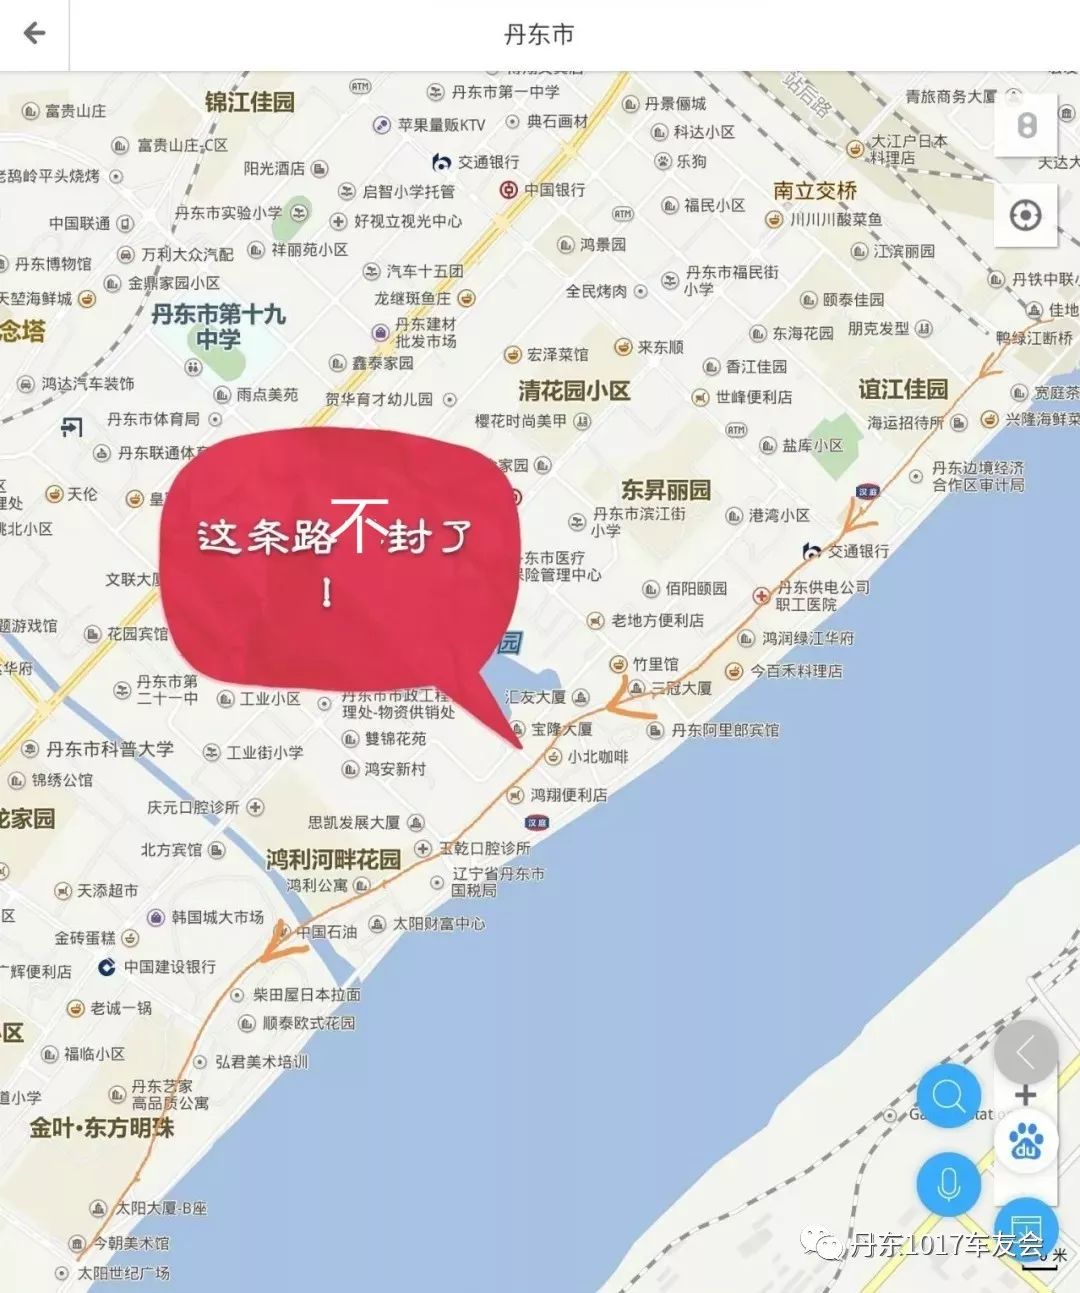 986【发布】鸡西客运中心至新华街路段封路通知